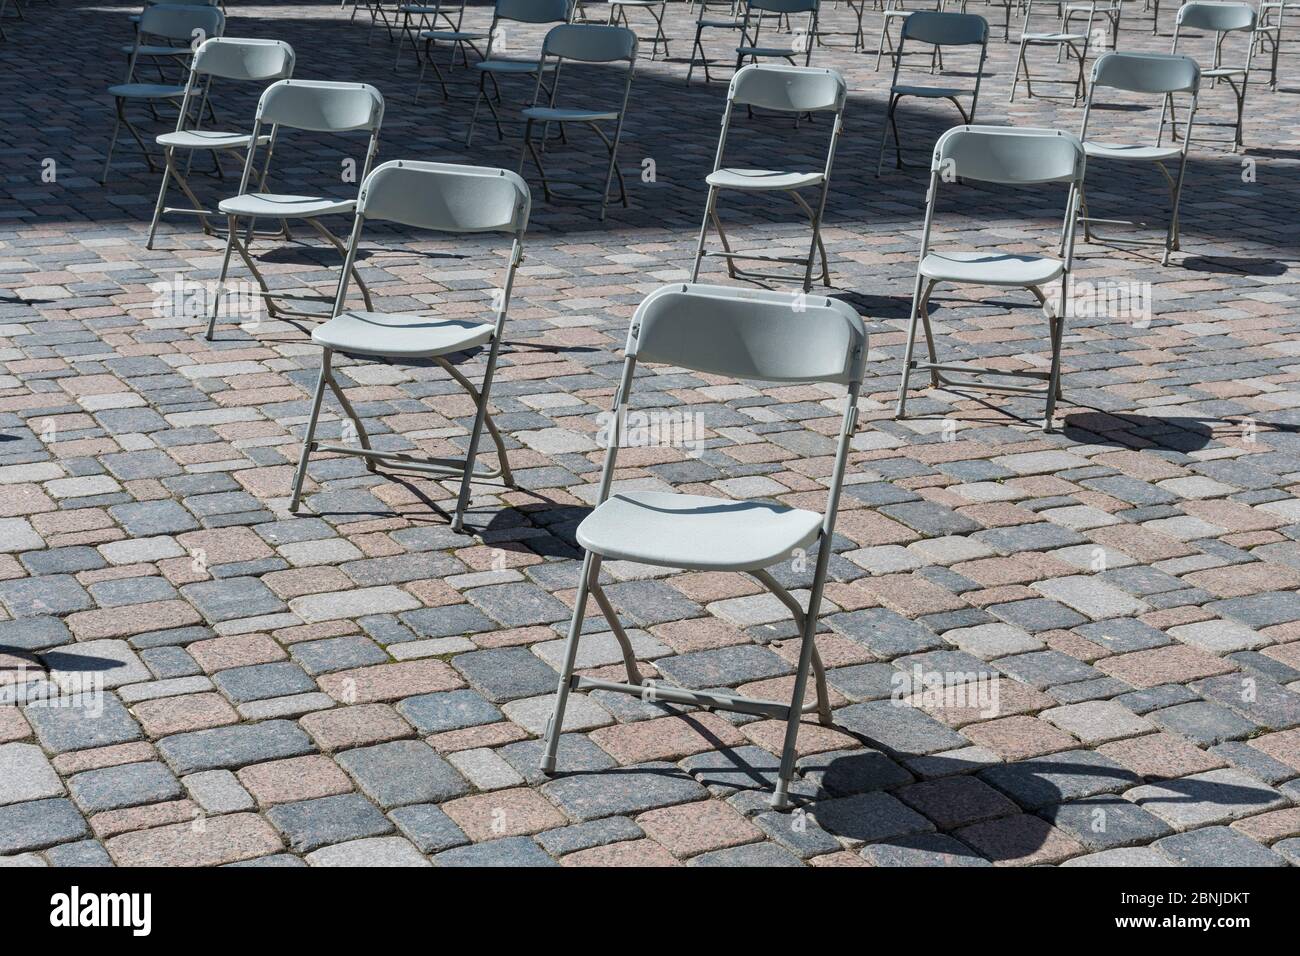 Distanciamiento social durante la crisis de Covid o Coronavirus, sillas que se mantienen a distancia durante un espectáculo, concierto o exposición, teatro o cine Foto de stock